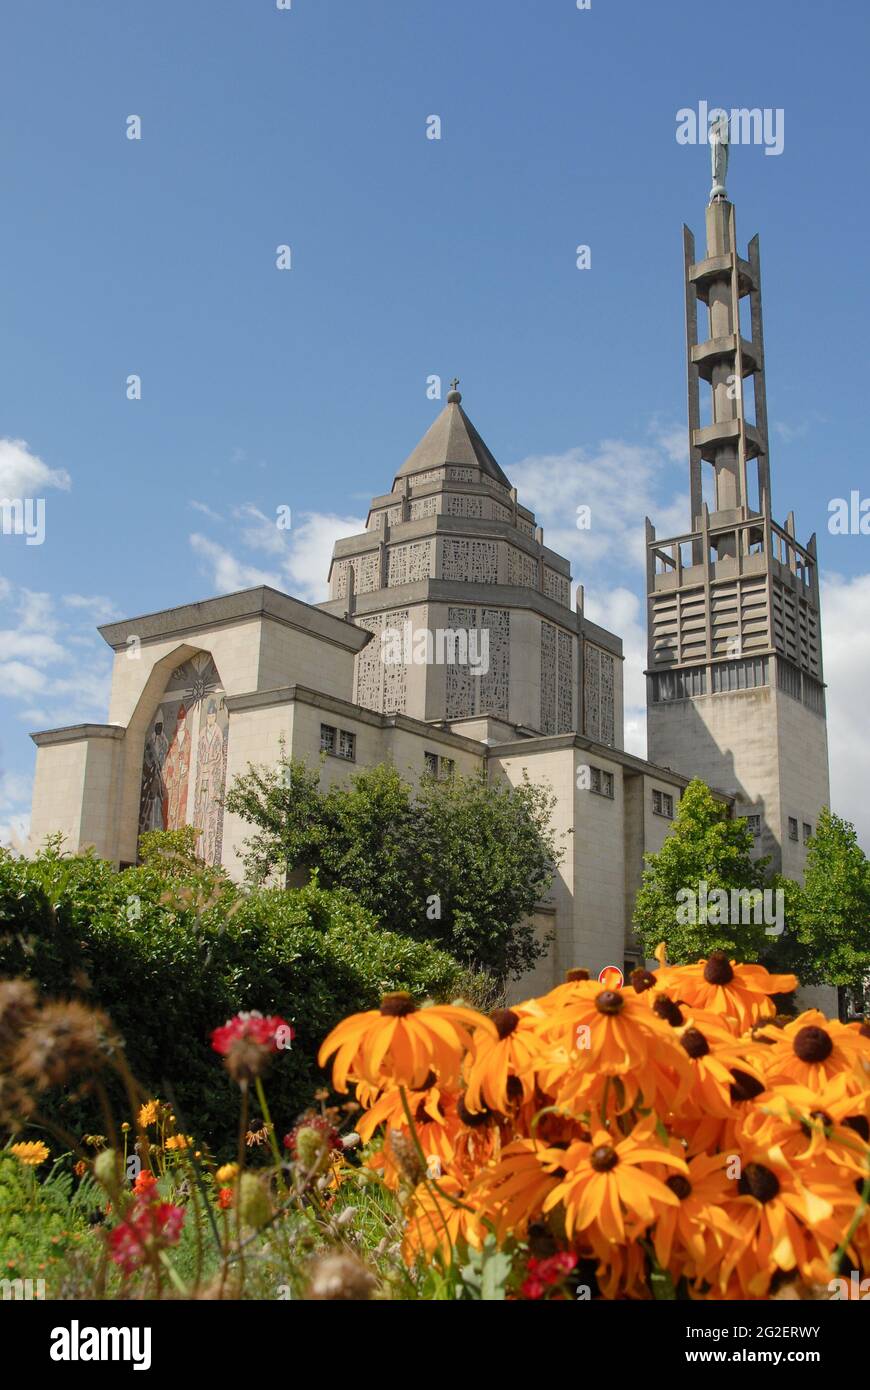 The church Église Saint-Honoré in Amiens, France Stock Photo